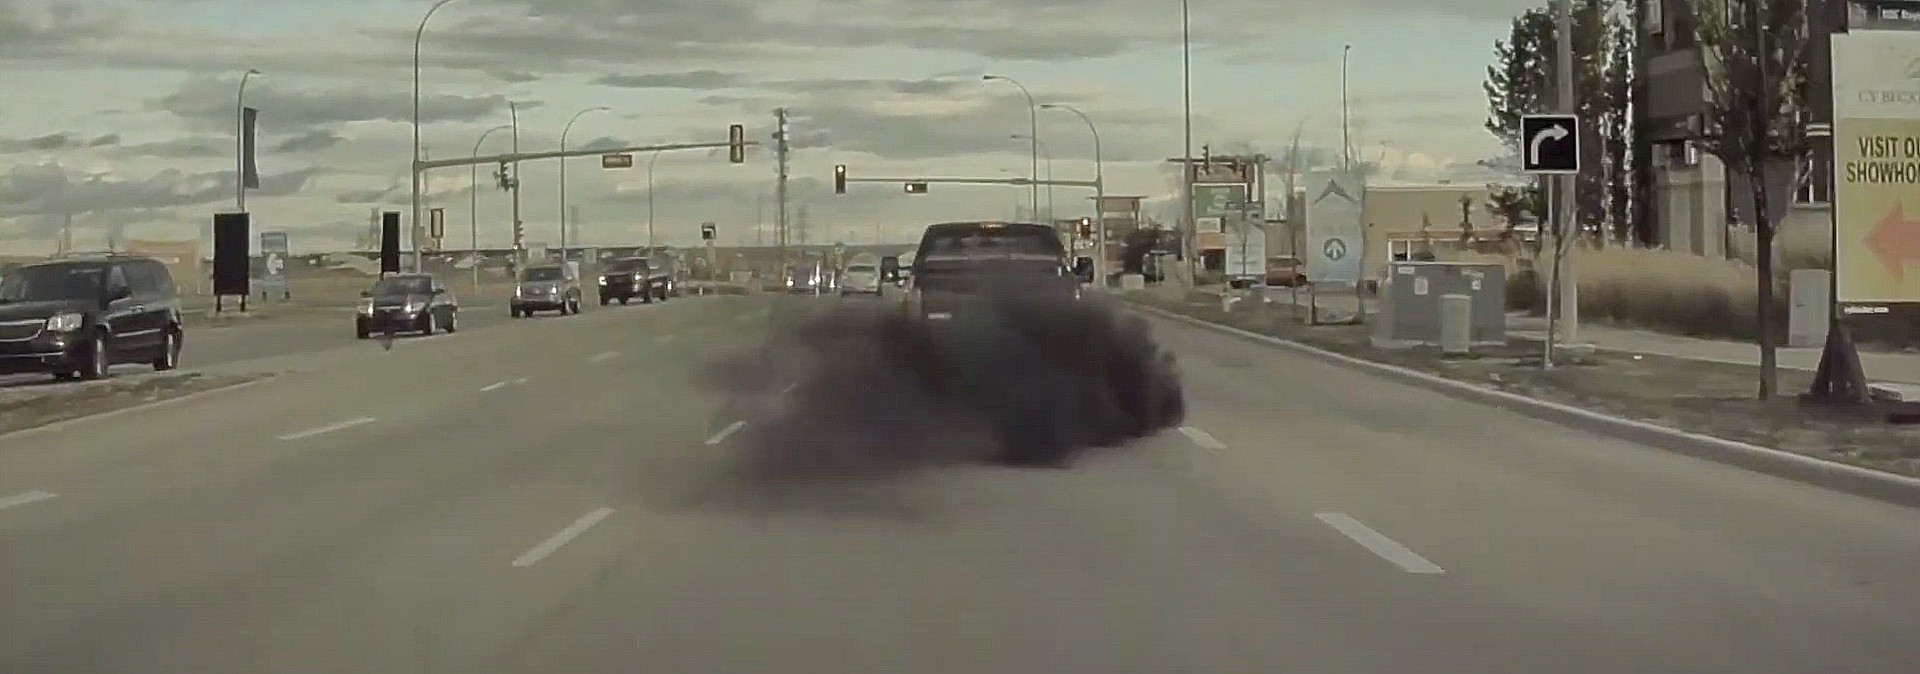 Водитель Tesla подходит к остановившемуся дизельному грузовику и откатывает уголь